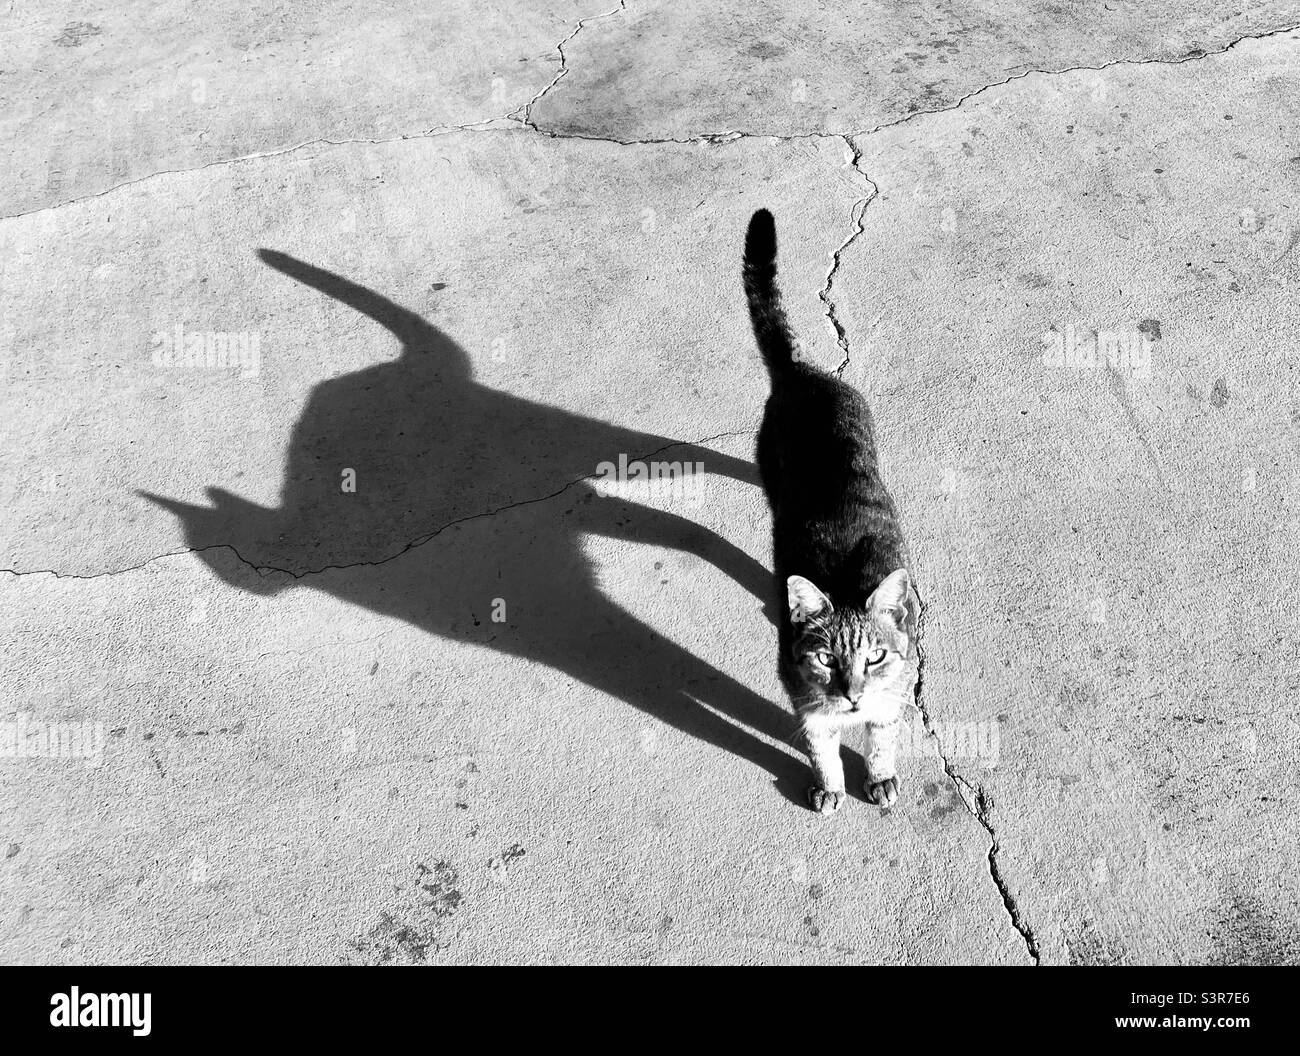 Nero e bianco tono di gatto su strada di cemento fessurato in pieno sole luminoso, getto a forma di gatto ombra, netto contrasto, gatto guardando verso l'alto Foto Stock